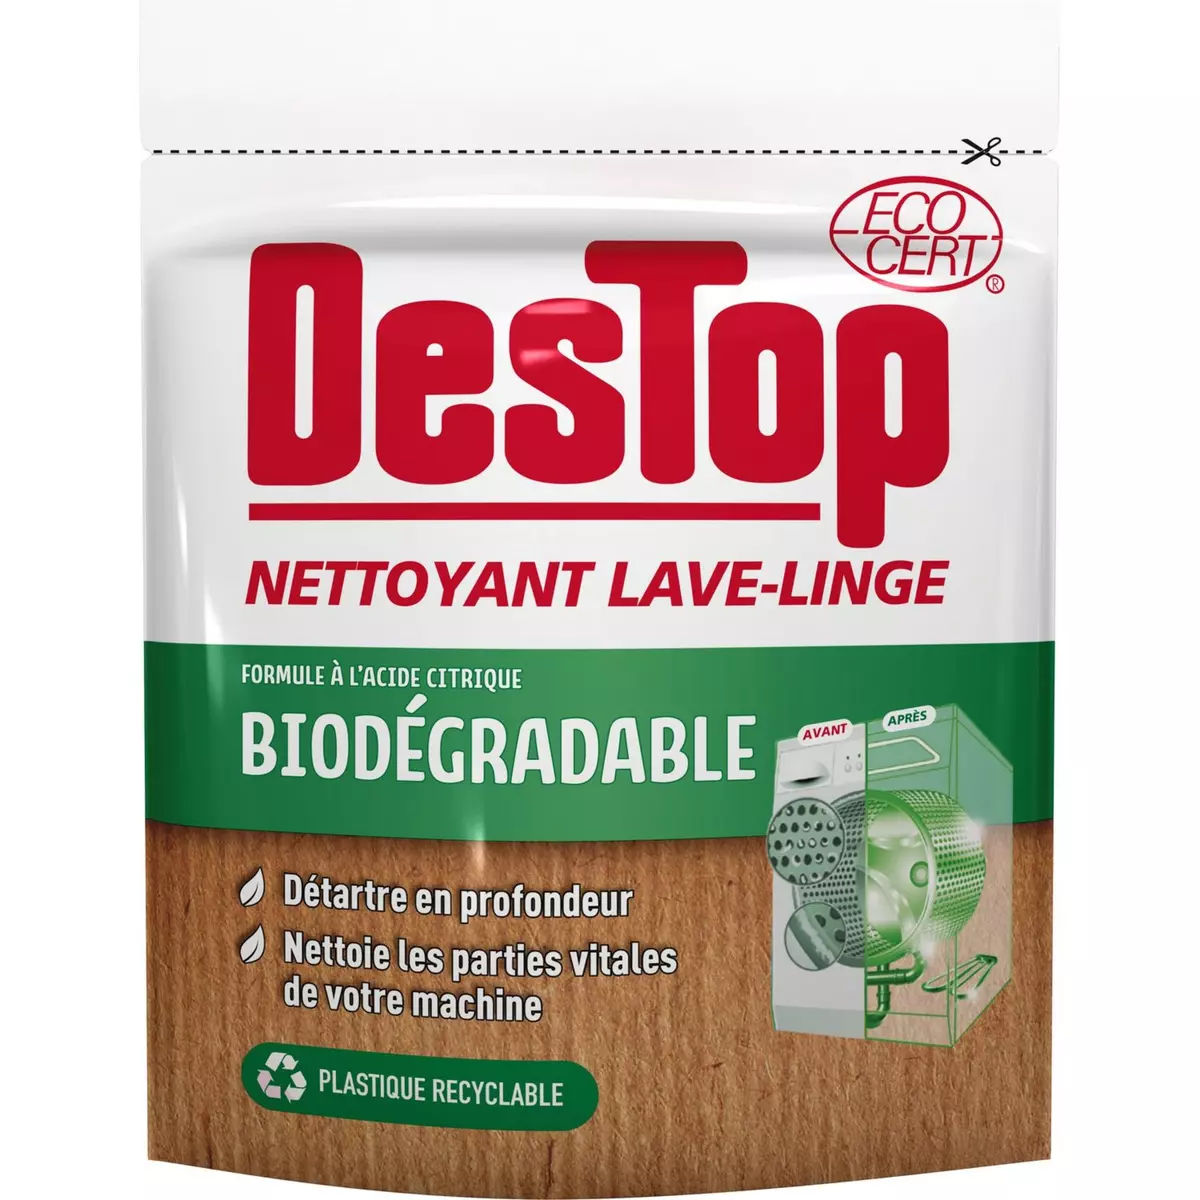 DESTOP Nettoyant lave-Linge anticalcaire biodégradable 250g pas cher 